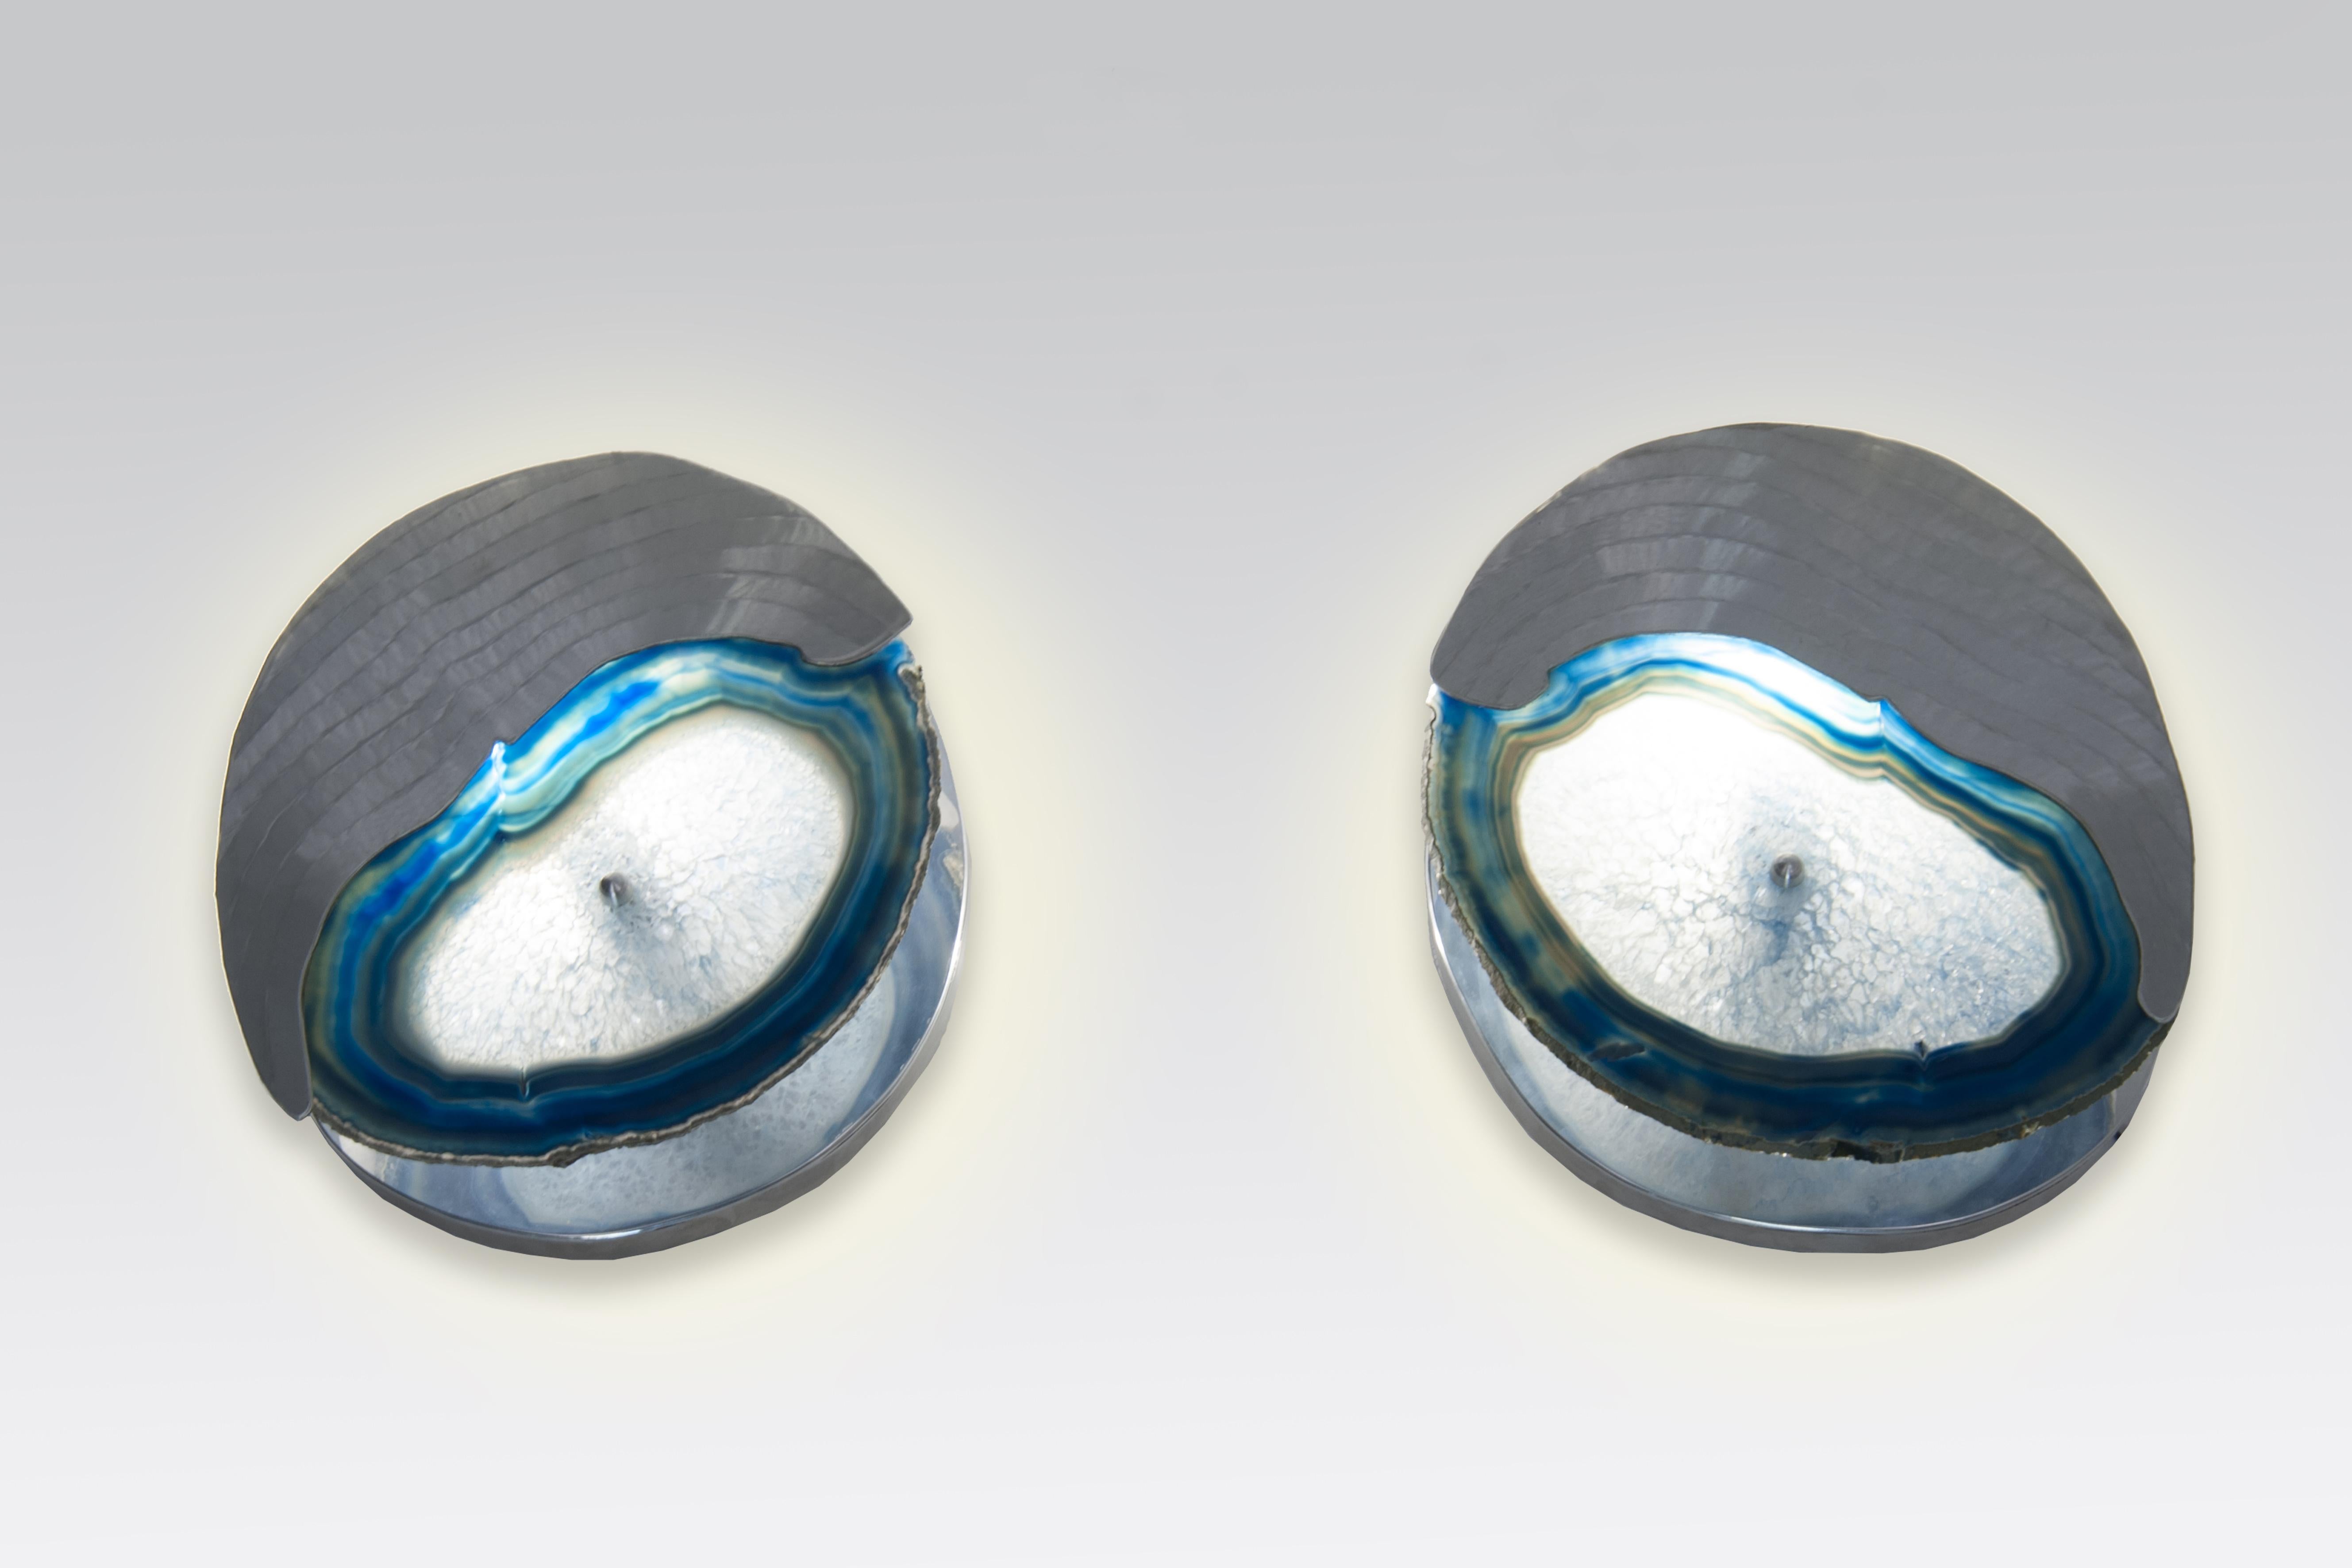 Créée sur mesure par Stan Usel, cette paire d'appliques en aluminium et agates bleues en pierre précieuse. N'hésitez pas à nous demander les différents modèles, déjà réalisés. Formez un artisanat d'exception avec l'art du meuble sur mesure. Ces